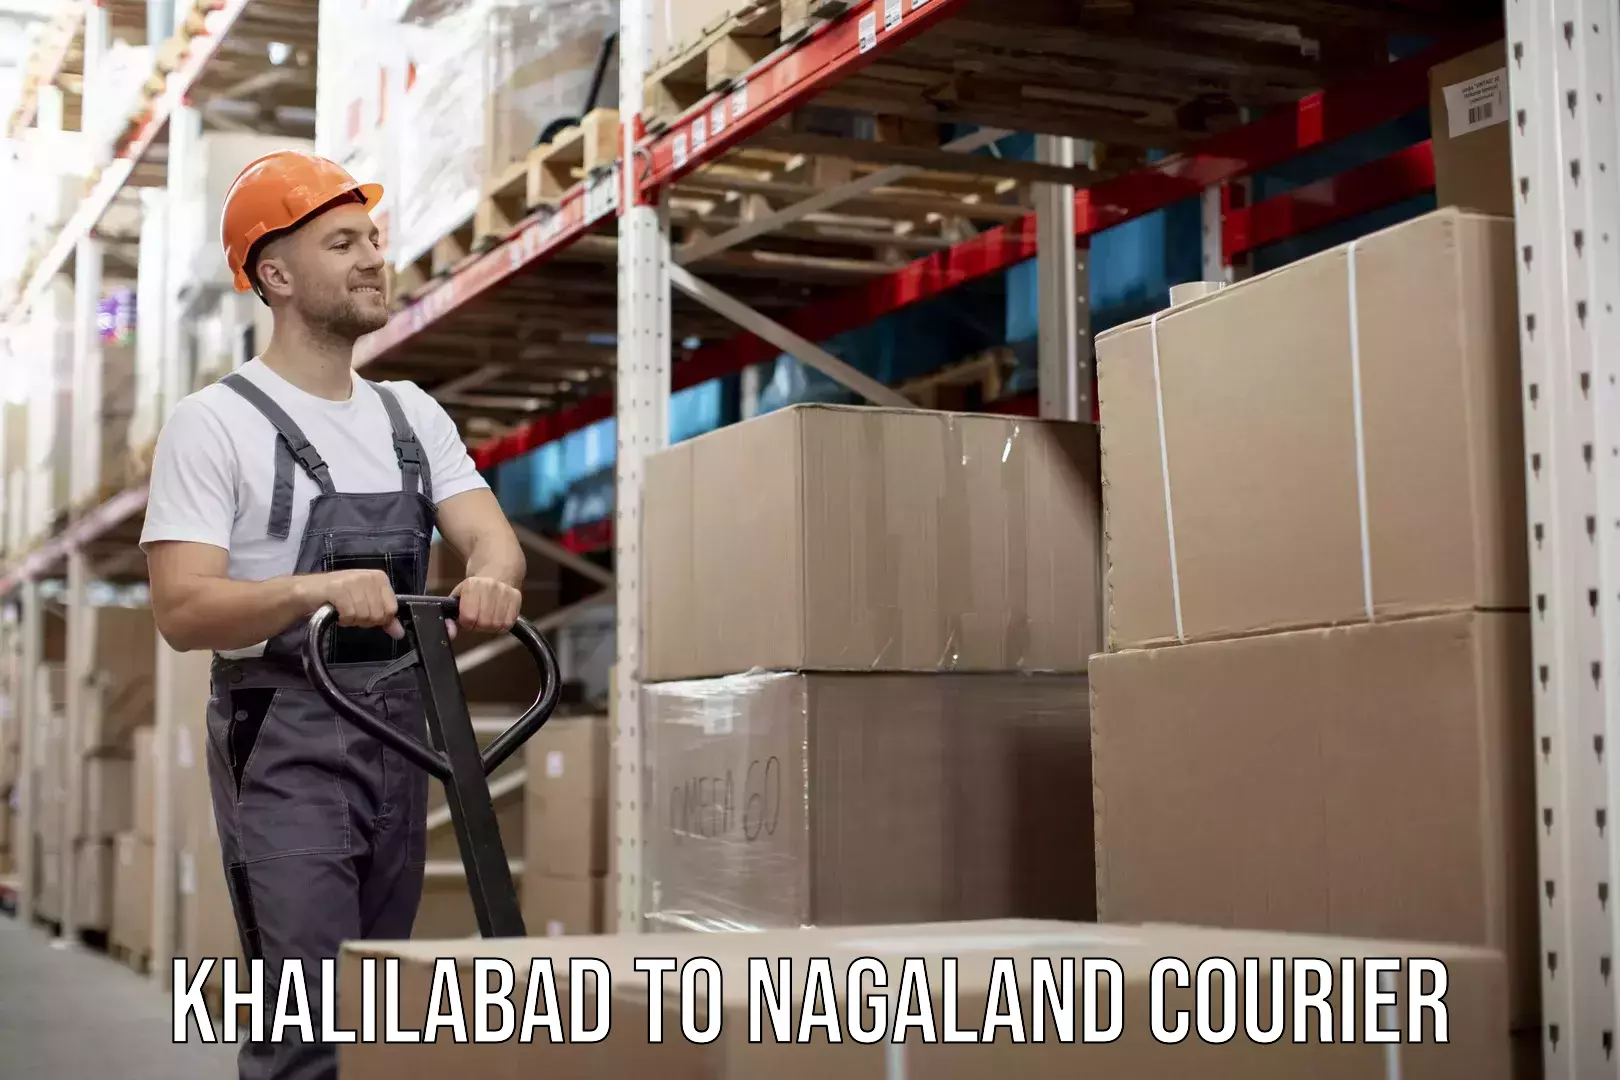 Professional moving company Khalilabad to Nagaland